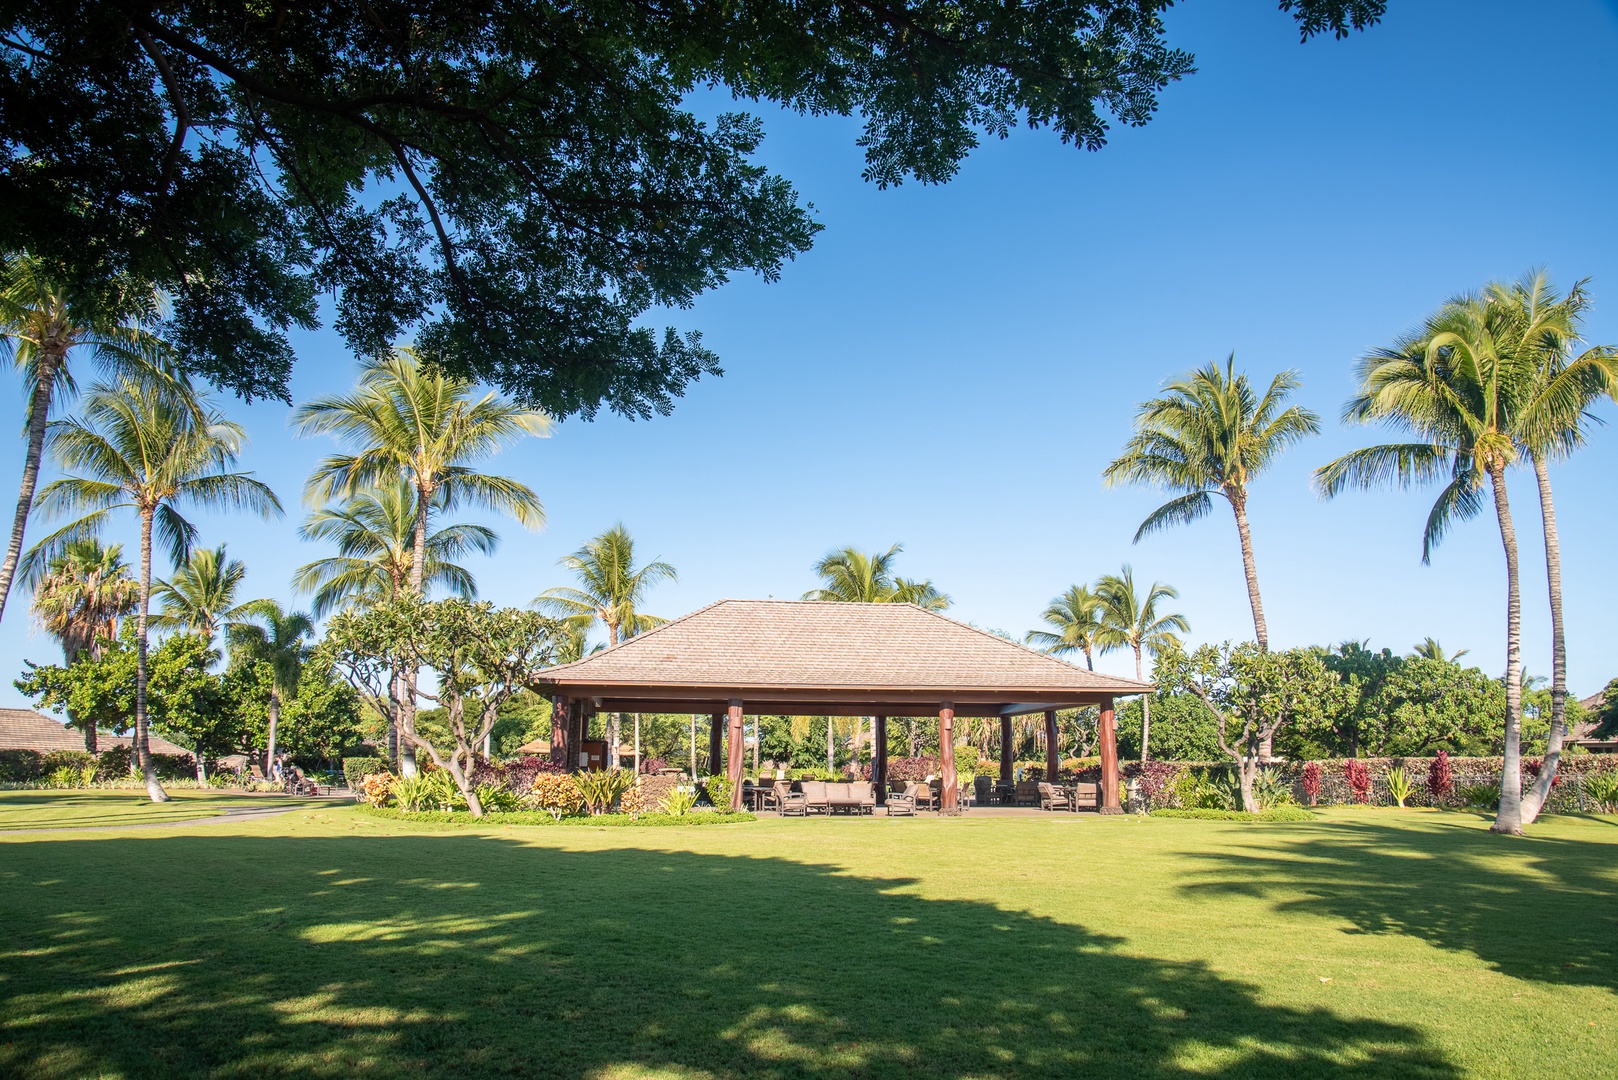 Kamuela Vacation Rentals, Kulalani 1701 at Mauna Lani - Enjoy a Meal at the Spacious Dining Pavilion by the Pool!